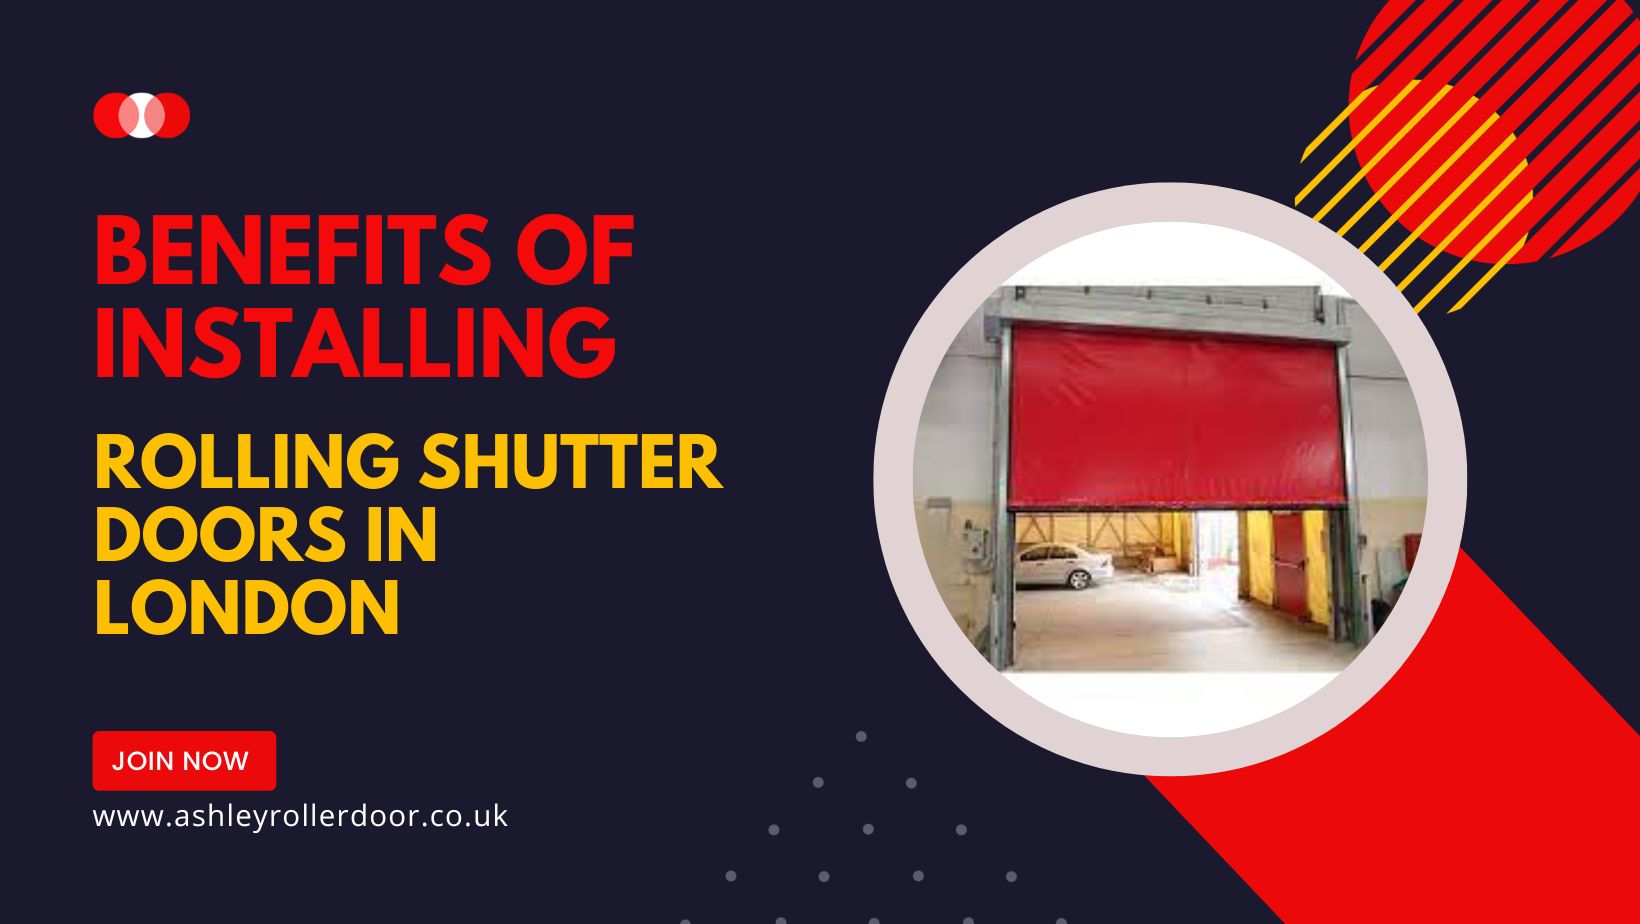 Rolling Shutter Doors in London